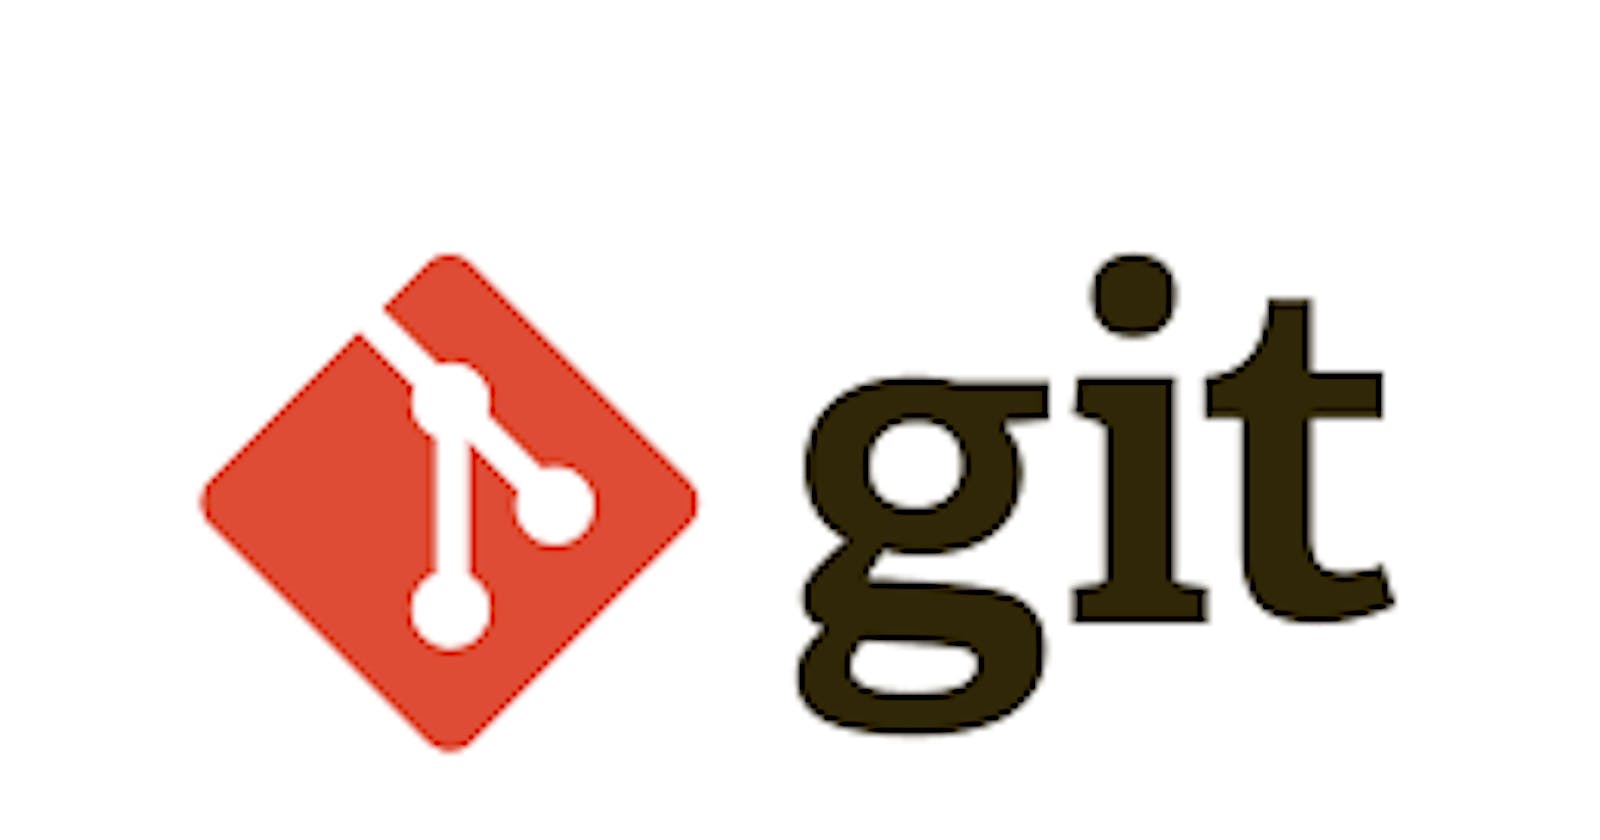 Cheatsheet on Git Basics.